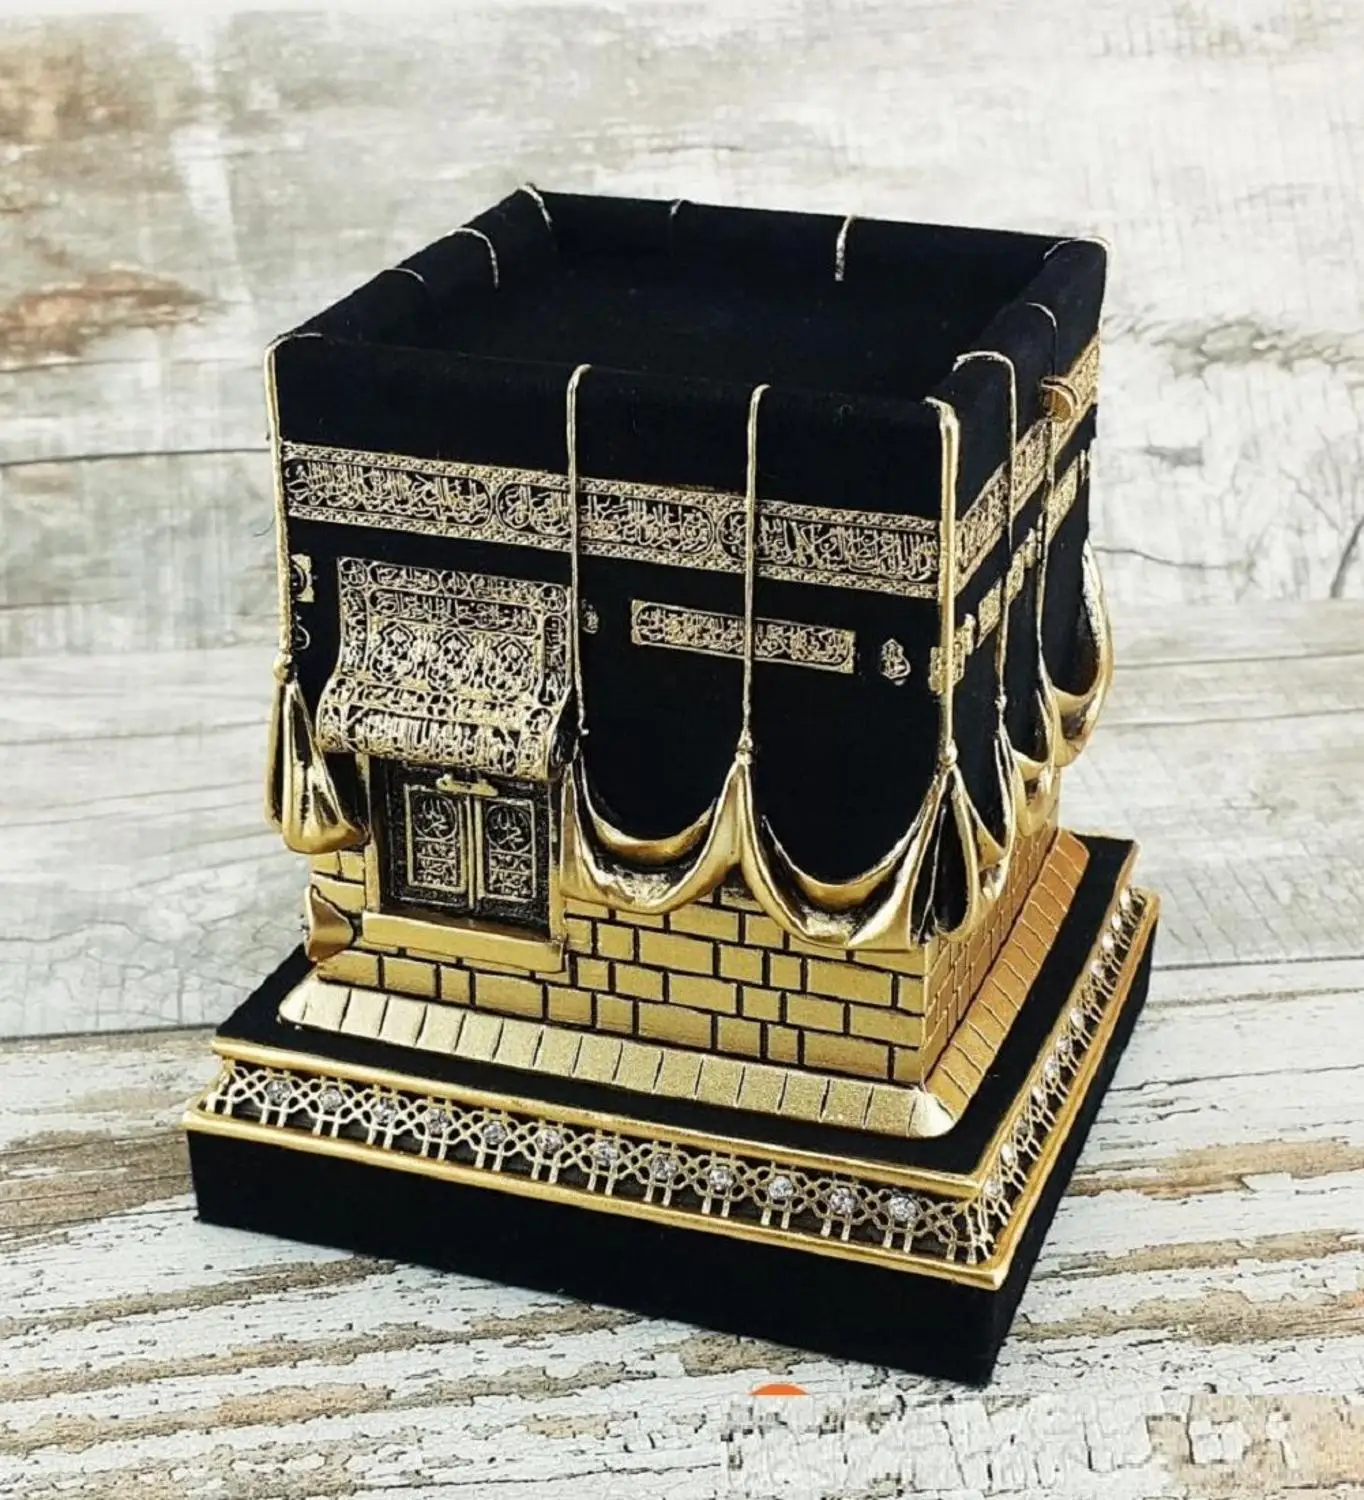 Islamský Home Table Dekor 3D Kaaba Replika Islamıc Darček Púť Hadj Umra Makkah